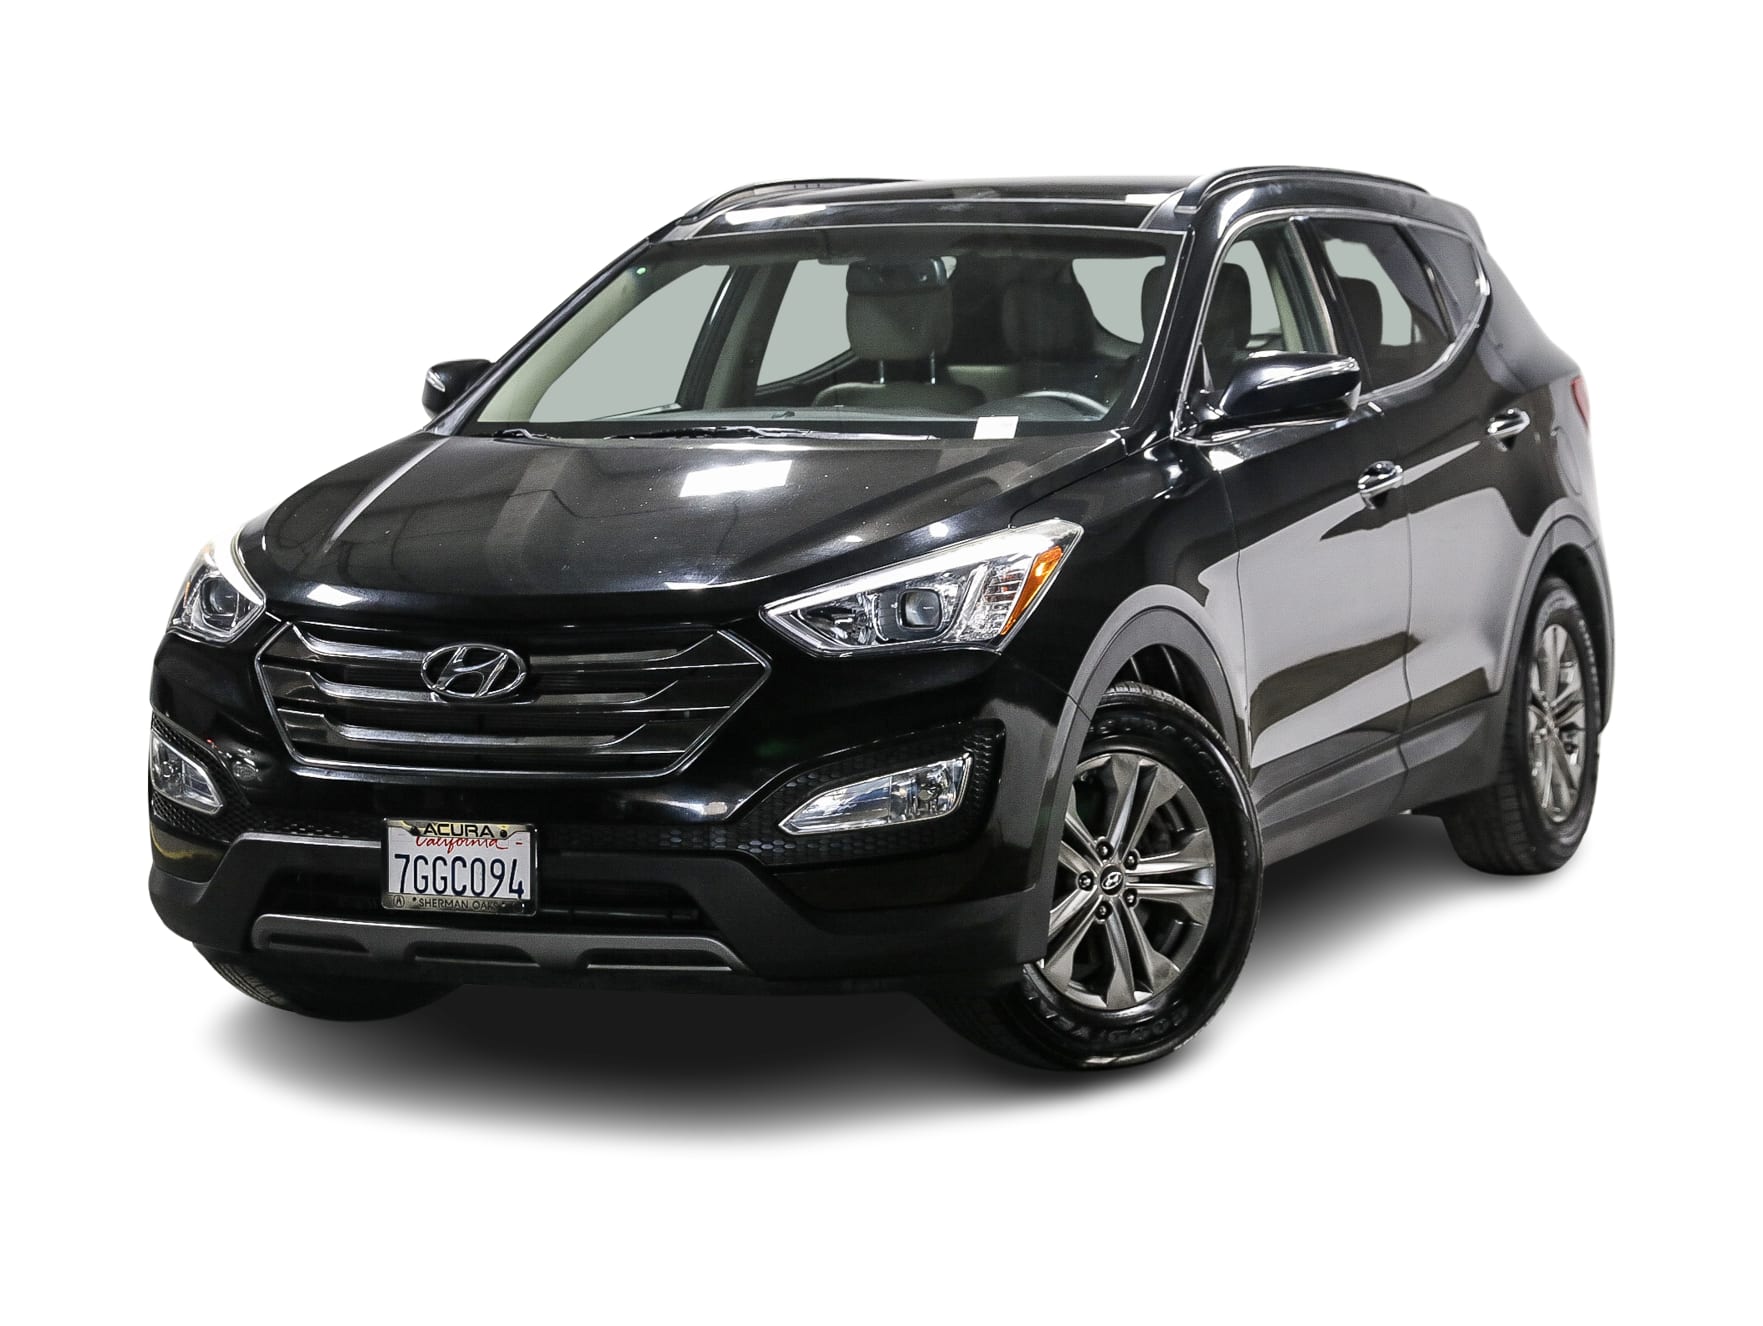 2014 Hyundai Santa Fe Sport 2.0T -
                Sherman Oaks, CA